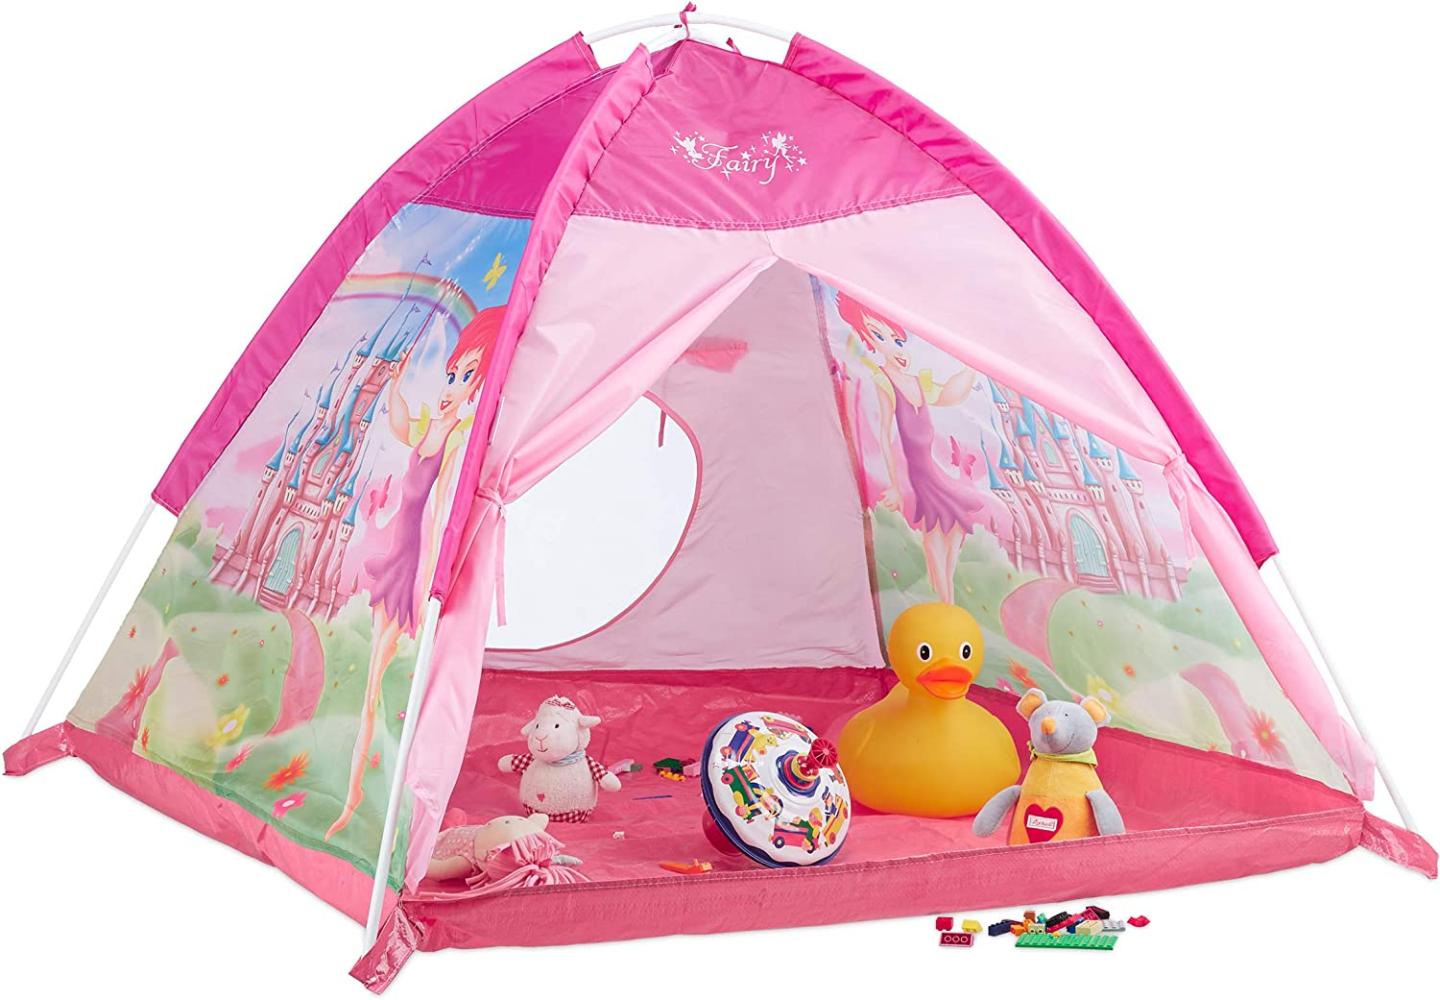 Relaxdays Spielzelt für Mädchen, Kinderspielzeit mit Feen-Schloss, Spielhaus für Innen & Außen, HBT 90x118x115 cm, Pink Bild 1